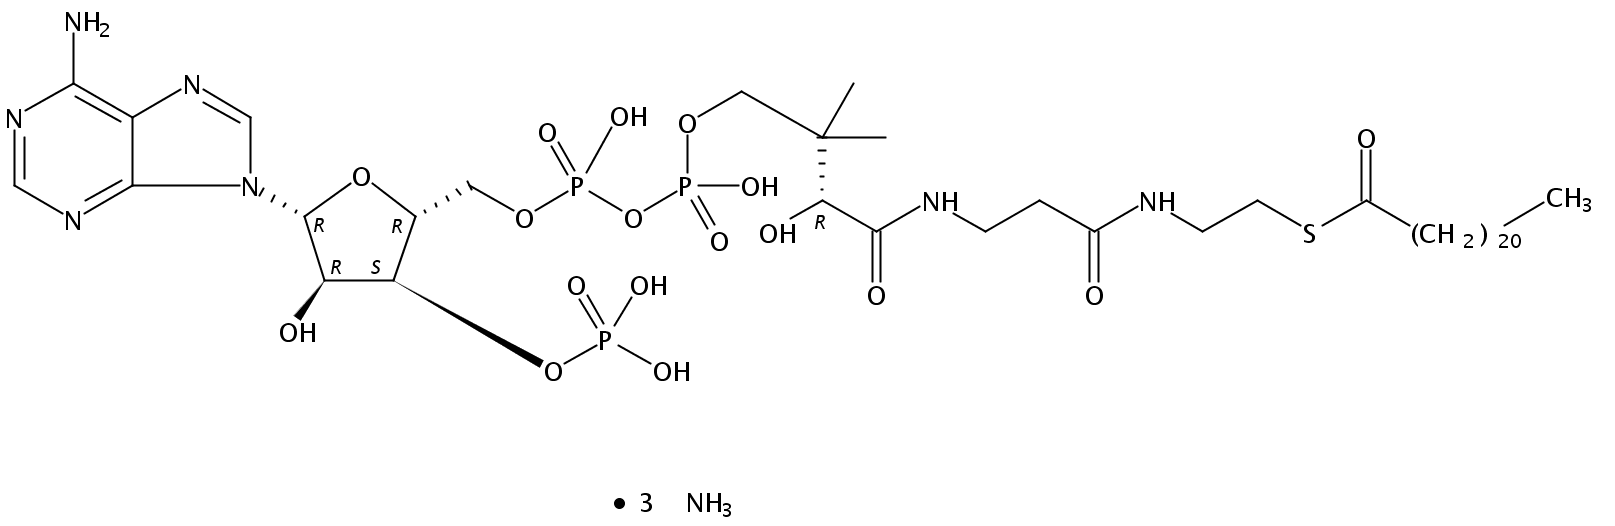 behenoyl Coenzyme A (ammonium salt)